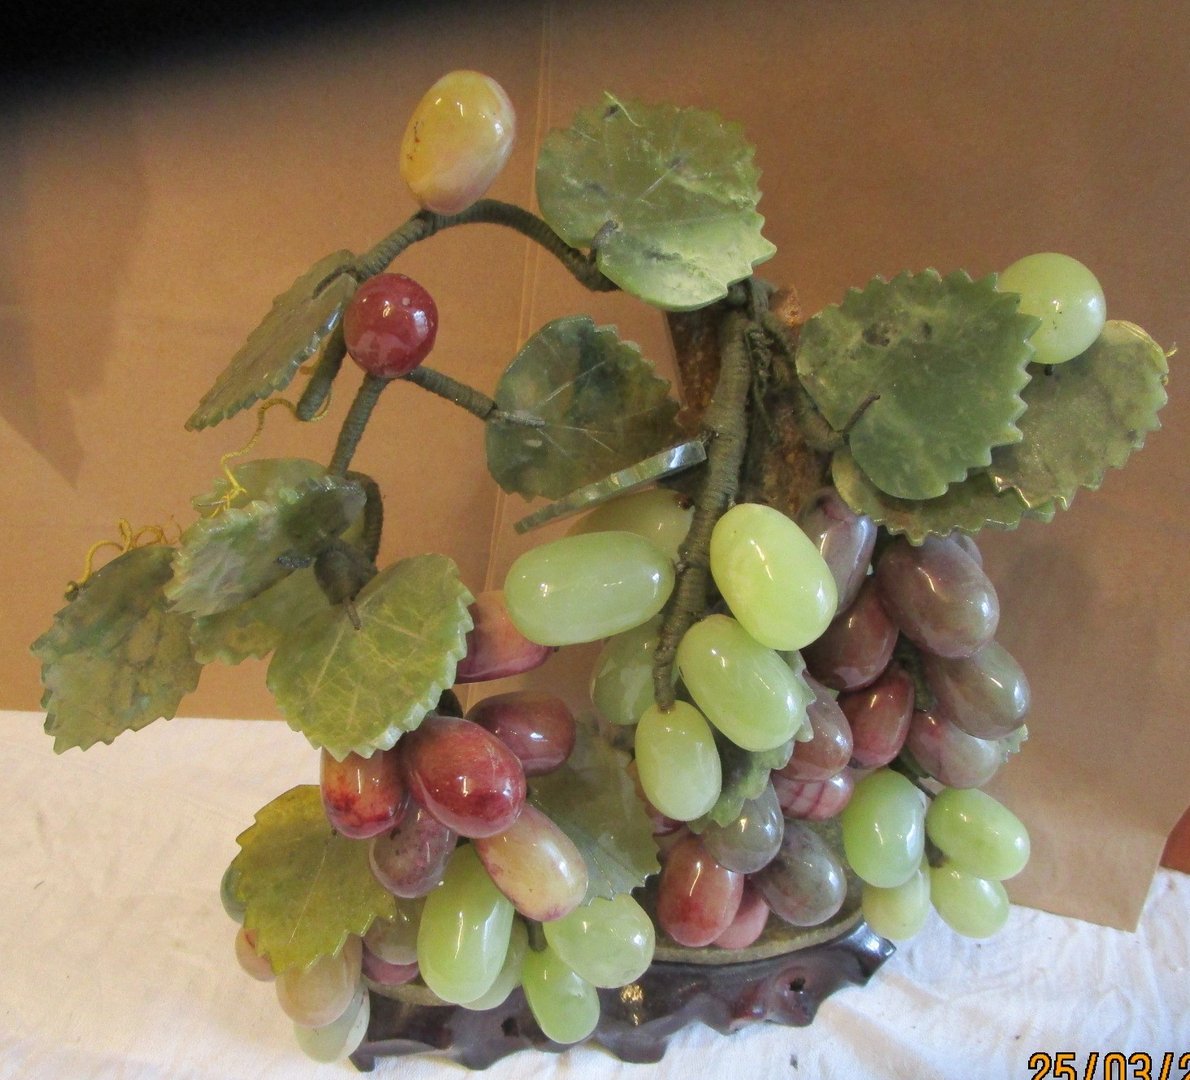 Vindrueklase lavet af alabast